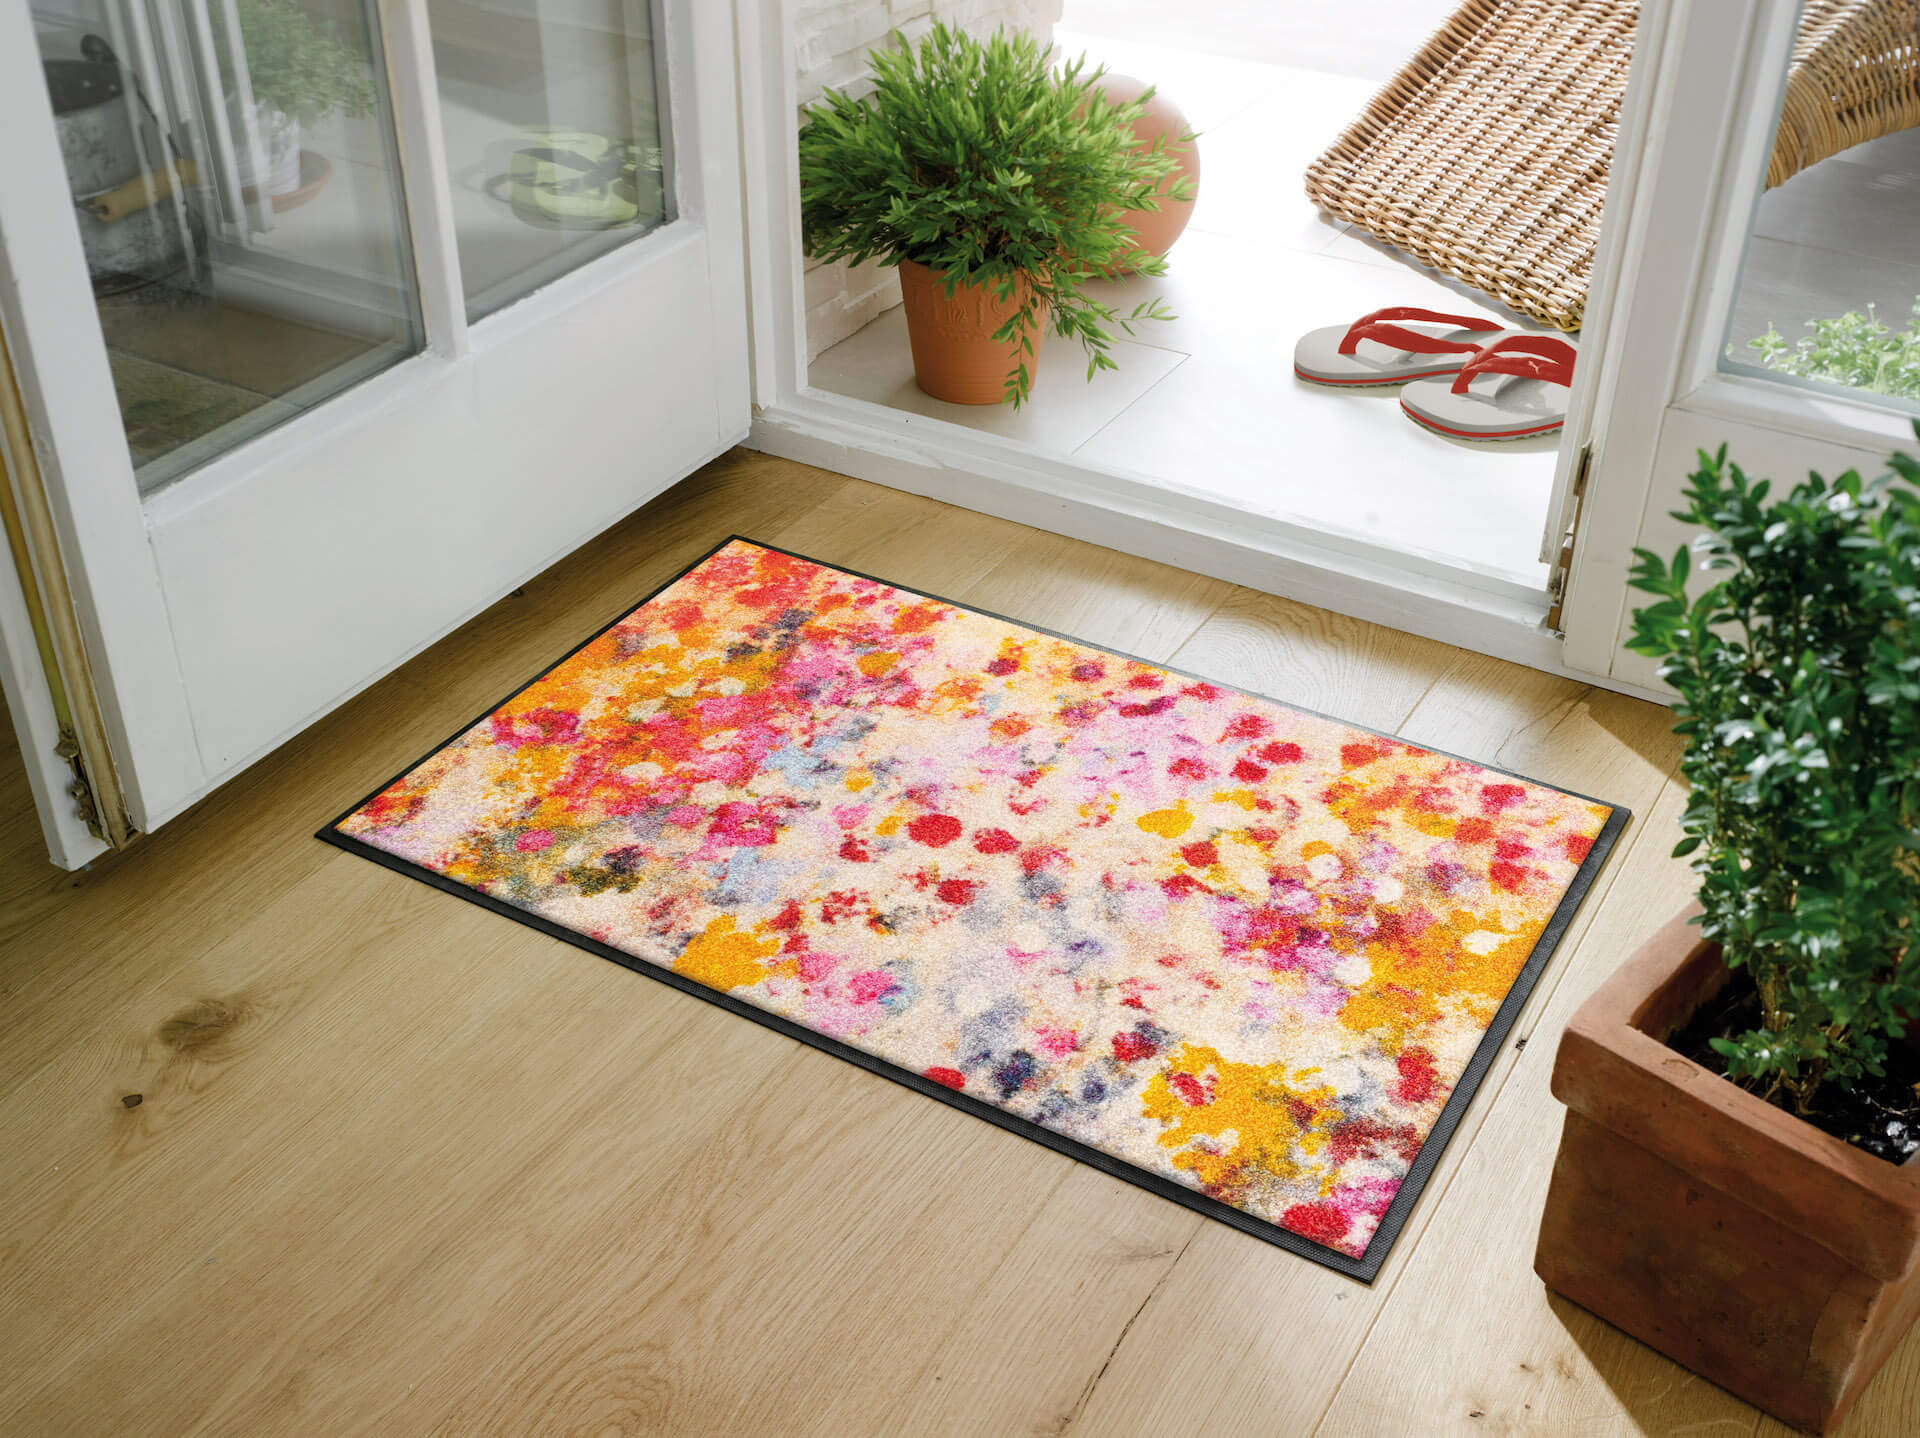 Fußmatte Wild Summer, Wash & Dry Design, mehrfarbig, 050 x 075 cm, Milieubild